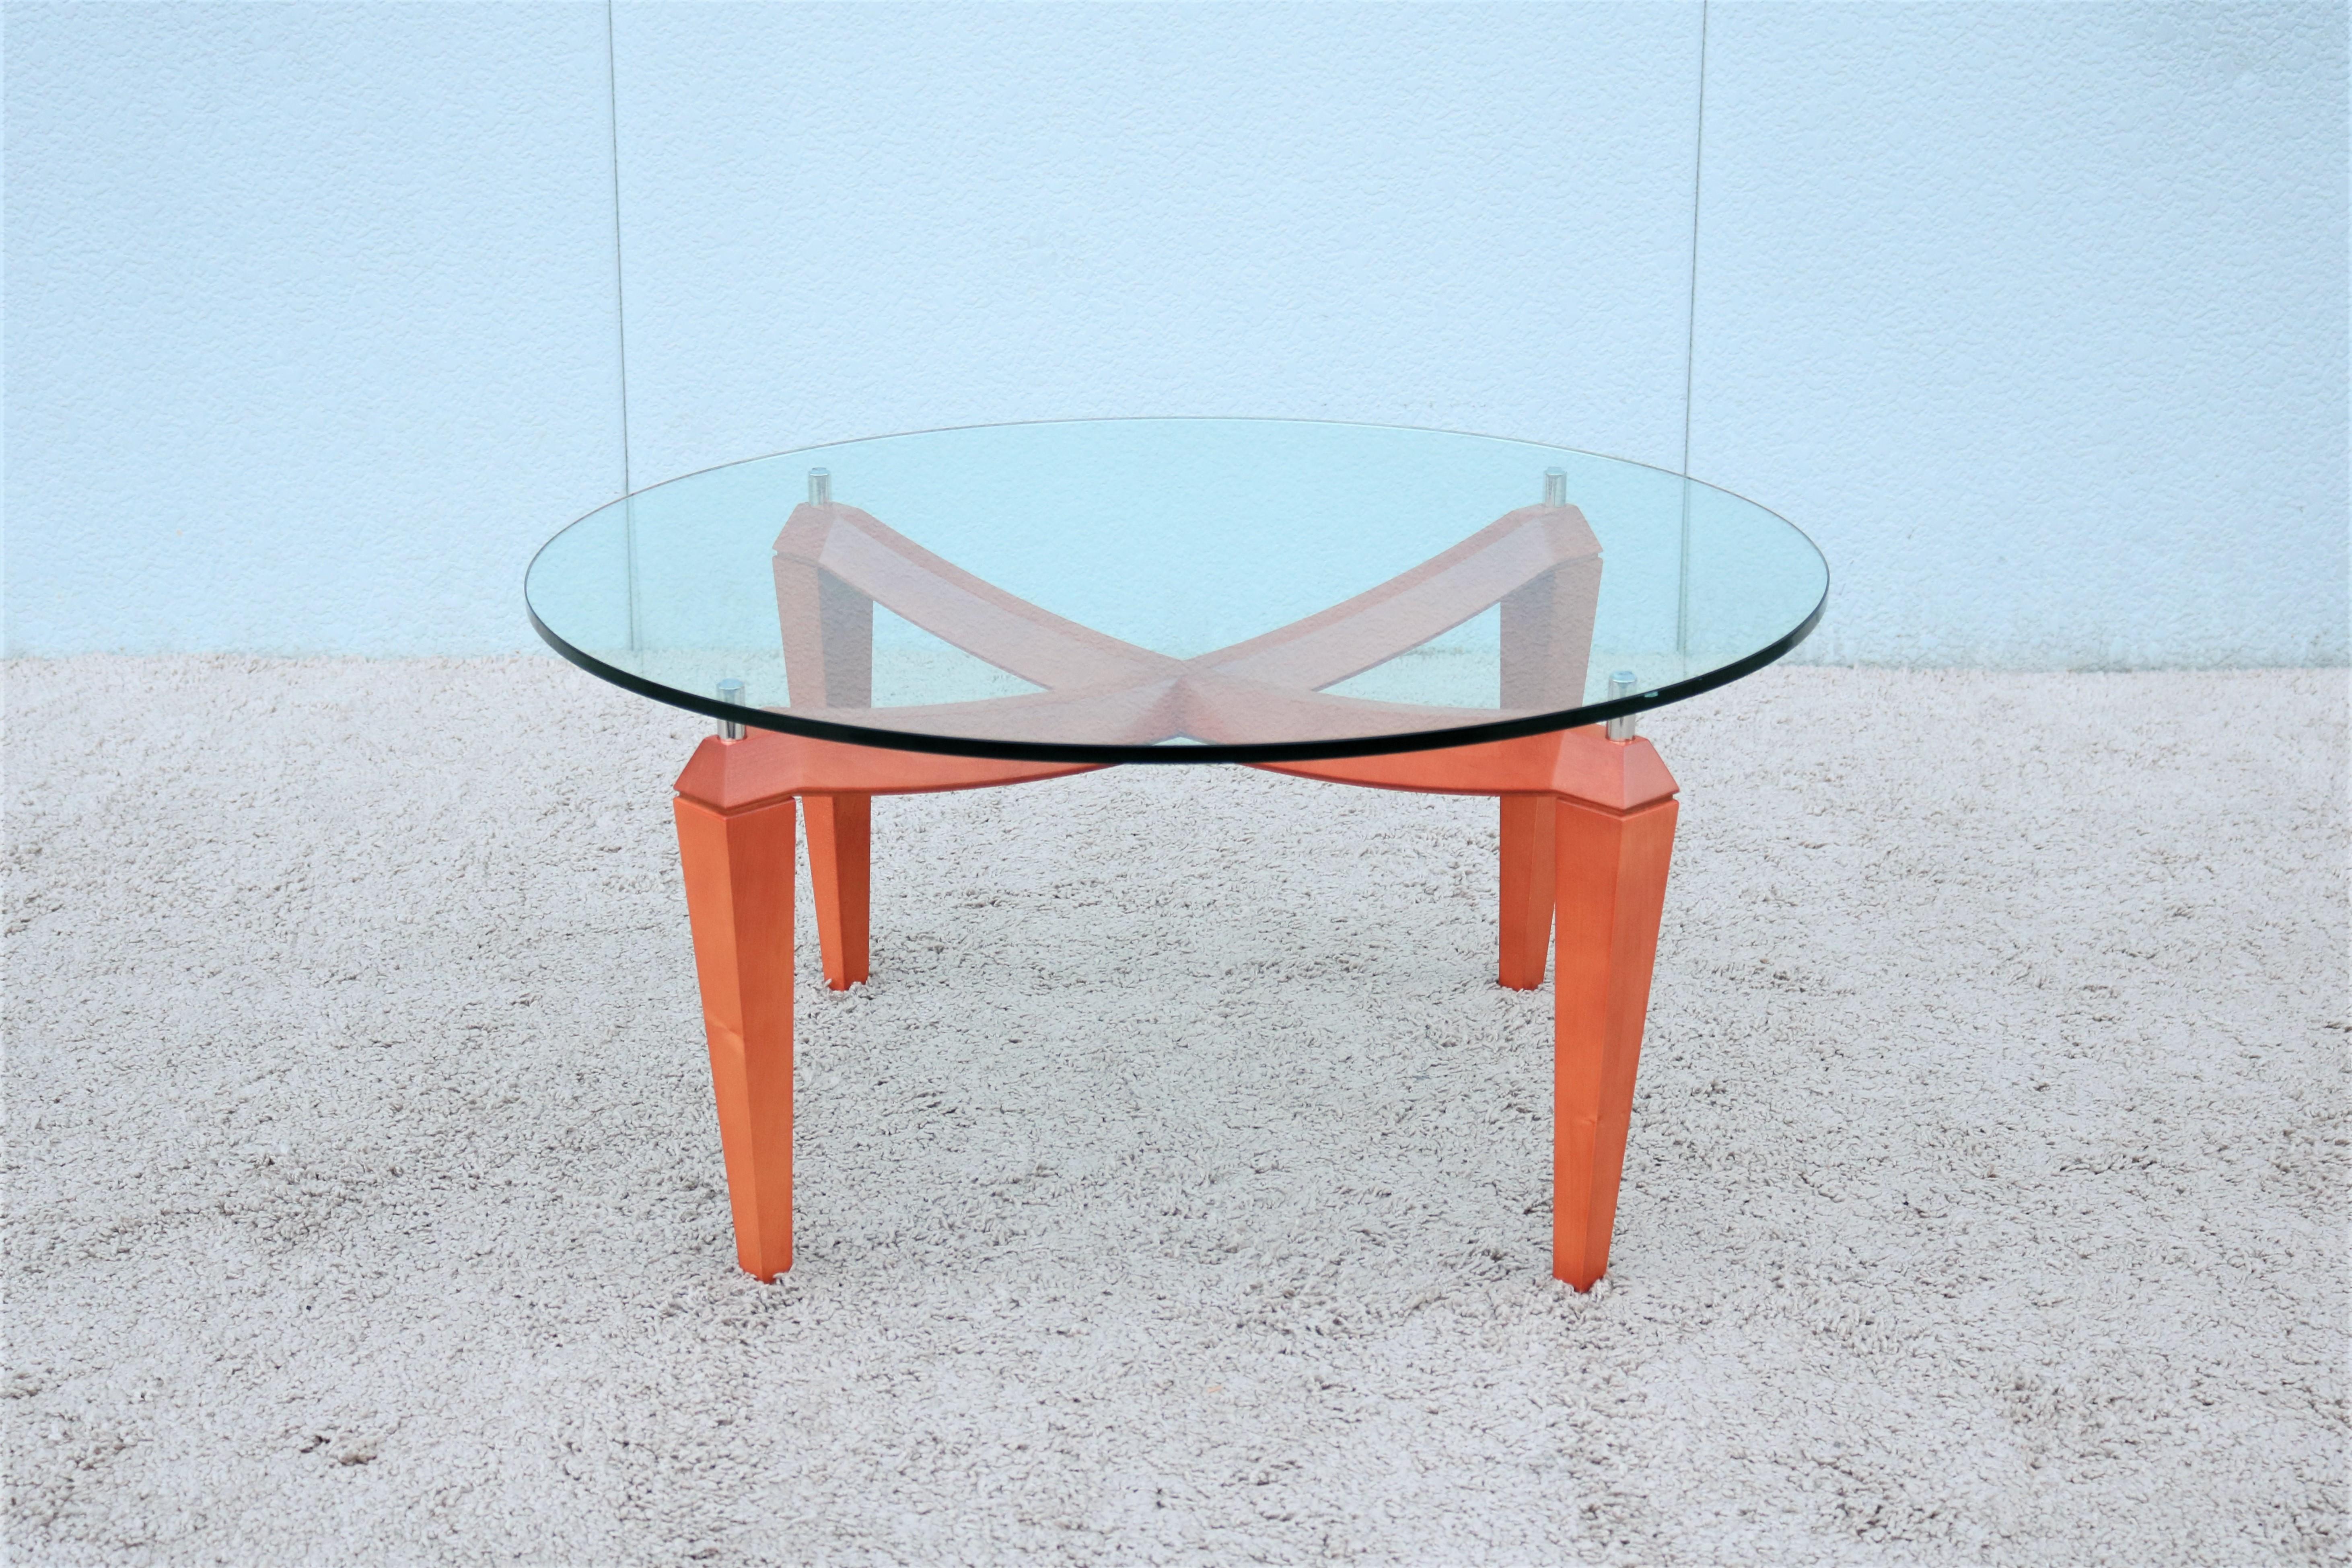 Fabuleuse table basse ronde italienne moderne, inspirée du design scandinave. 
Cette magnifique table allie le luxe que vous souhaitez à la fonctionnalité dont vous avez besoin.
La base sculptée donne un profil saisissant au plateau, qui semble